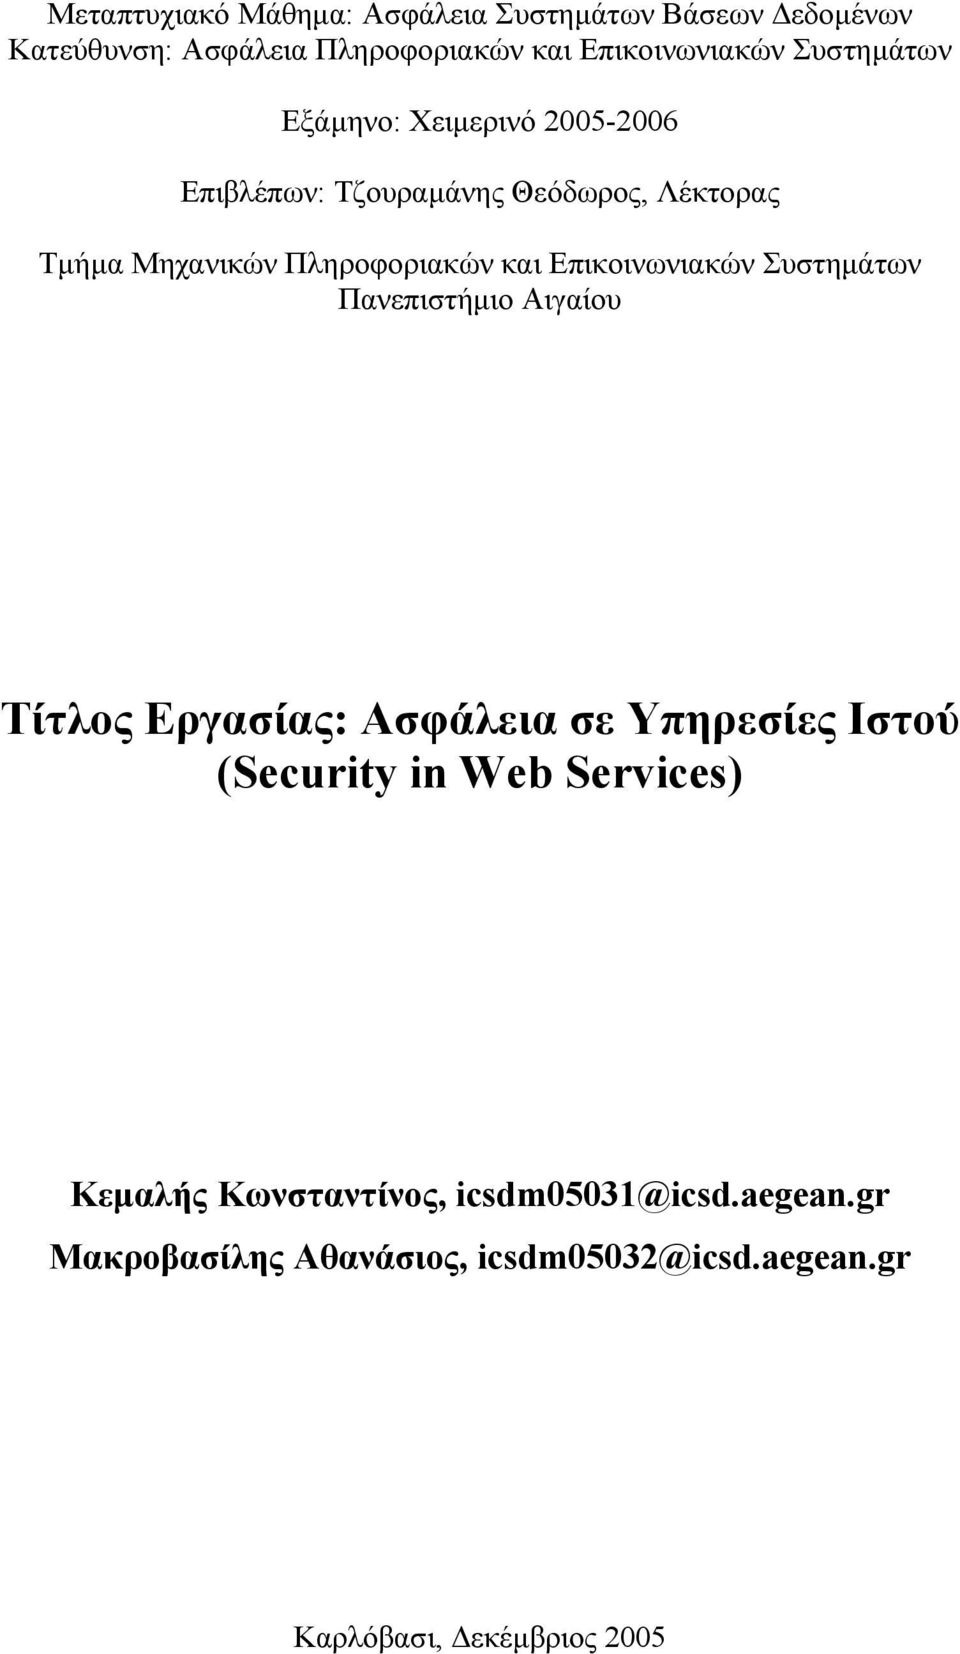 Επικοινωνιακών Συστημάτων Πανεπιστήμιο Αιγαίου Τίτλος Εργασίας: Ασφάλεια σε Υπηρεσίες Ιστού (Security in Web